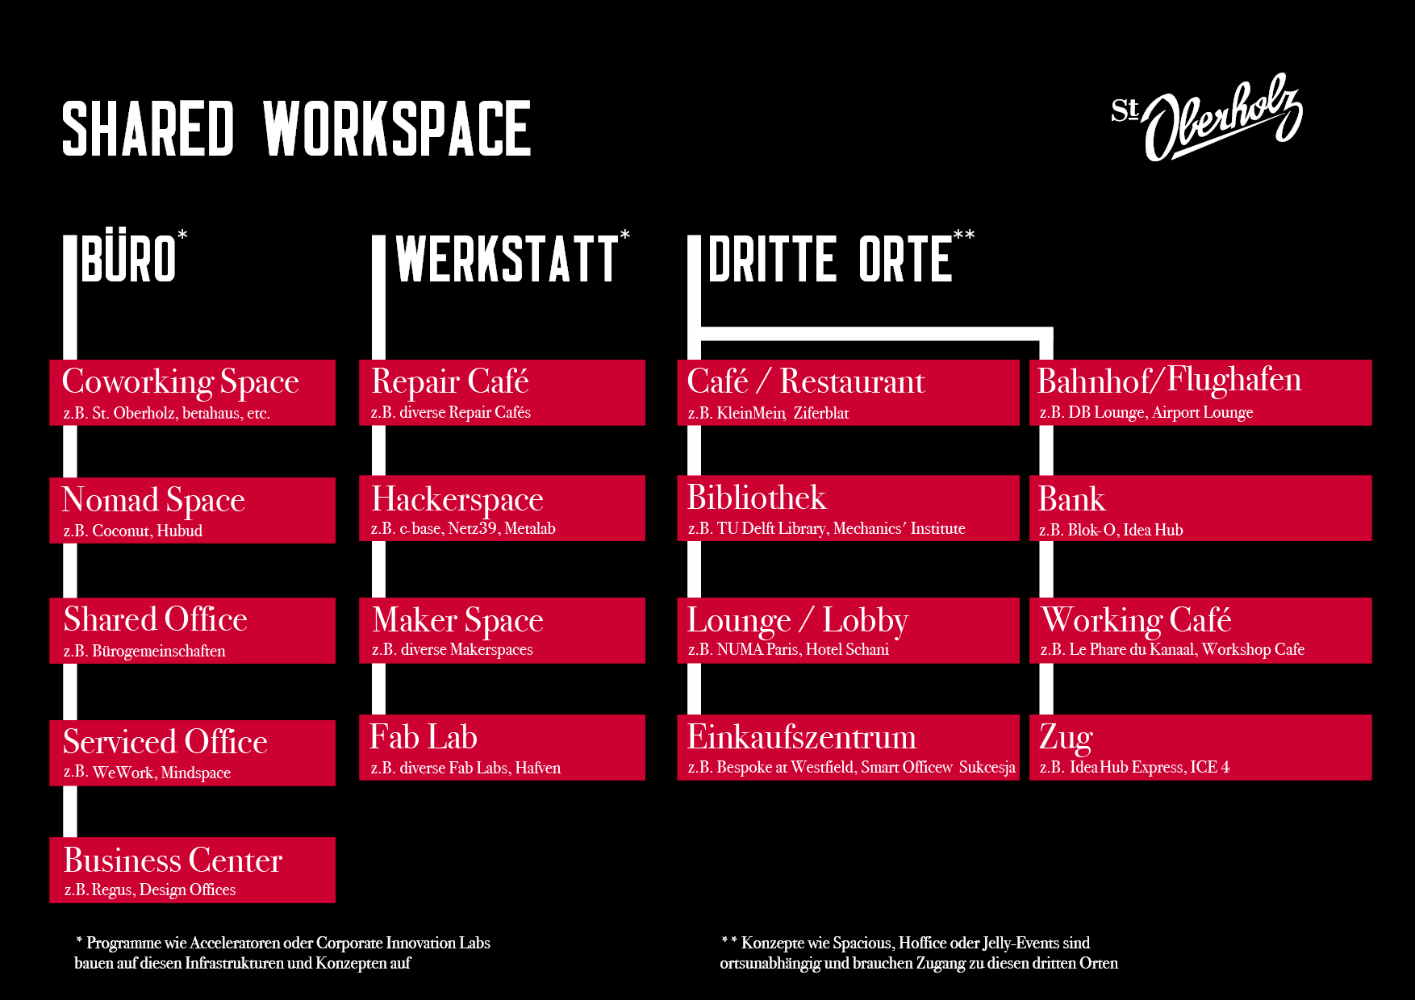 Auflistung der Shared Workspaces in die Kategorien Büro, Werkstatt und Dritte Orte. Abbildung: St. Oberholz